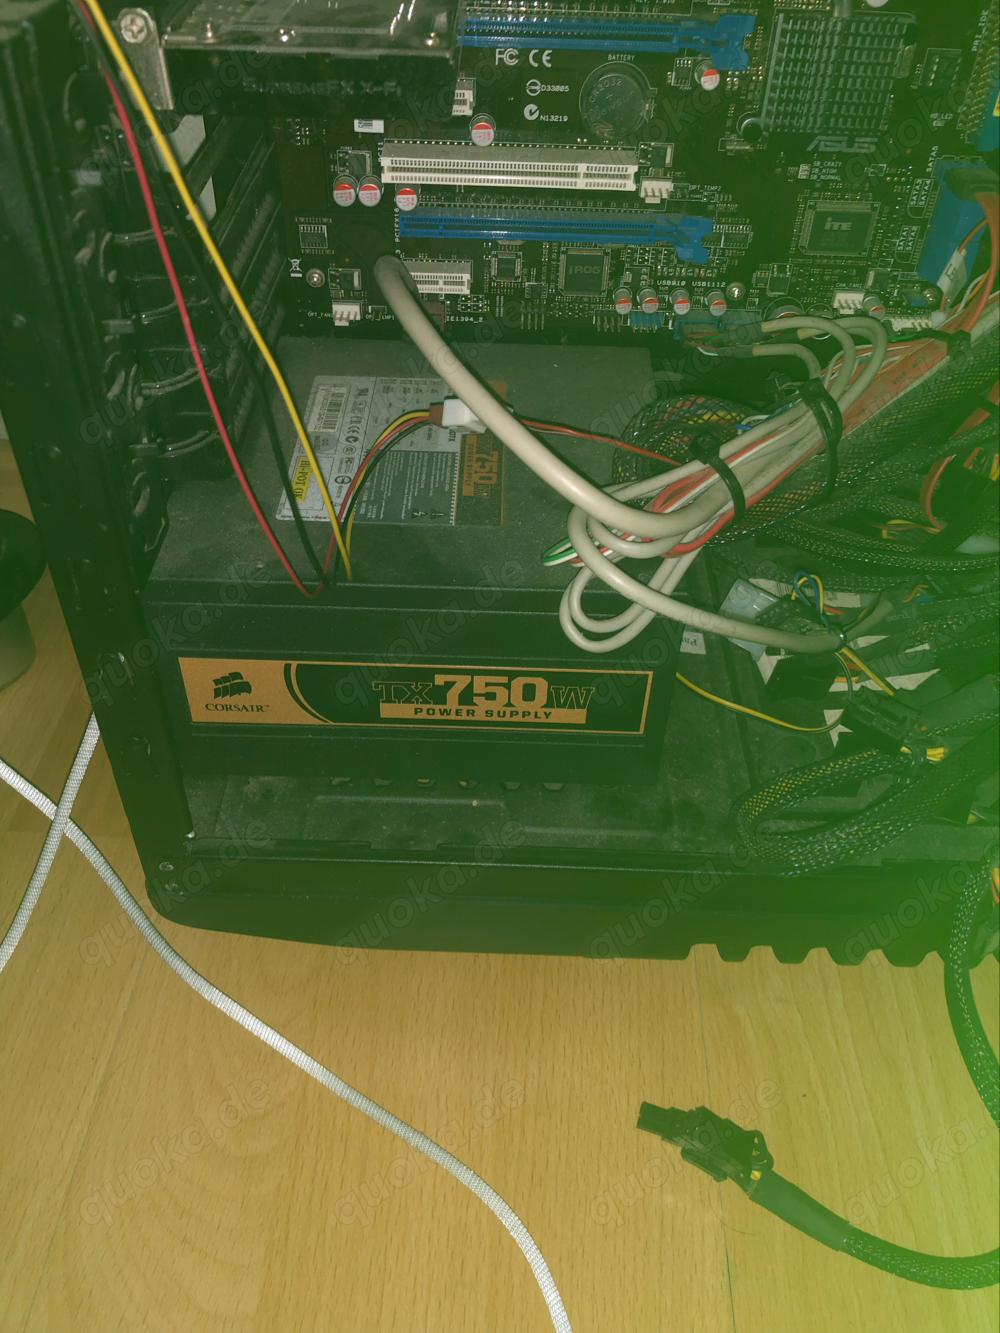 AMD Phenom 2 X4 750 W TX POWER supplies FX sound and Cooler Master case gtx gpu mit Staubfilter